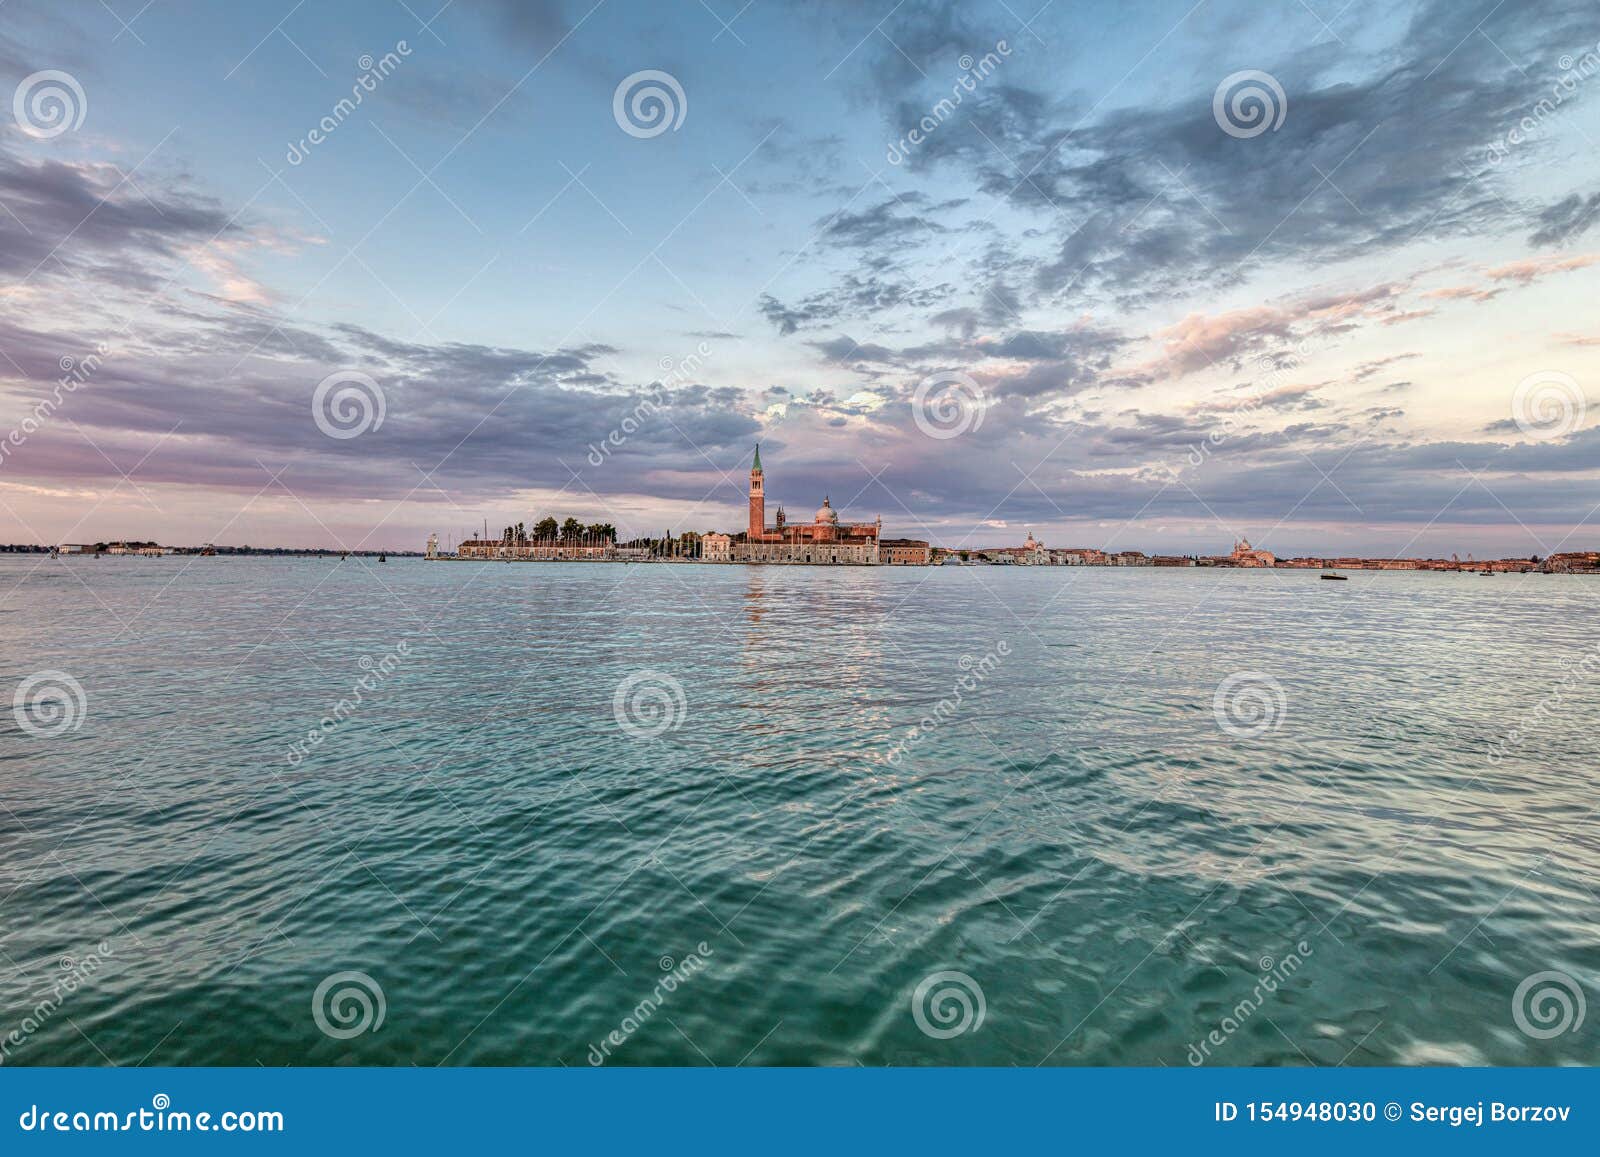 View at San Giorgio Maggiore Island, Venice, Italy Stock Photo - Image ...